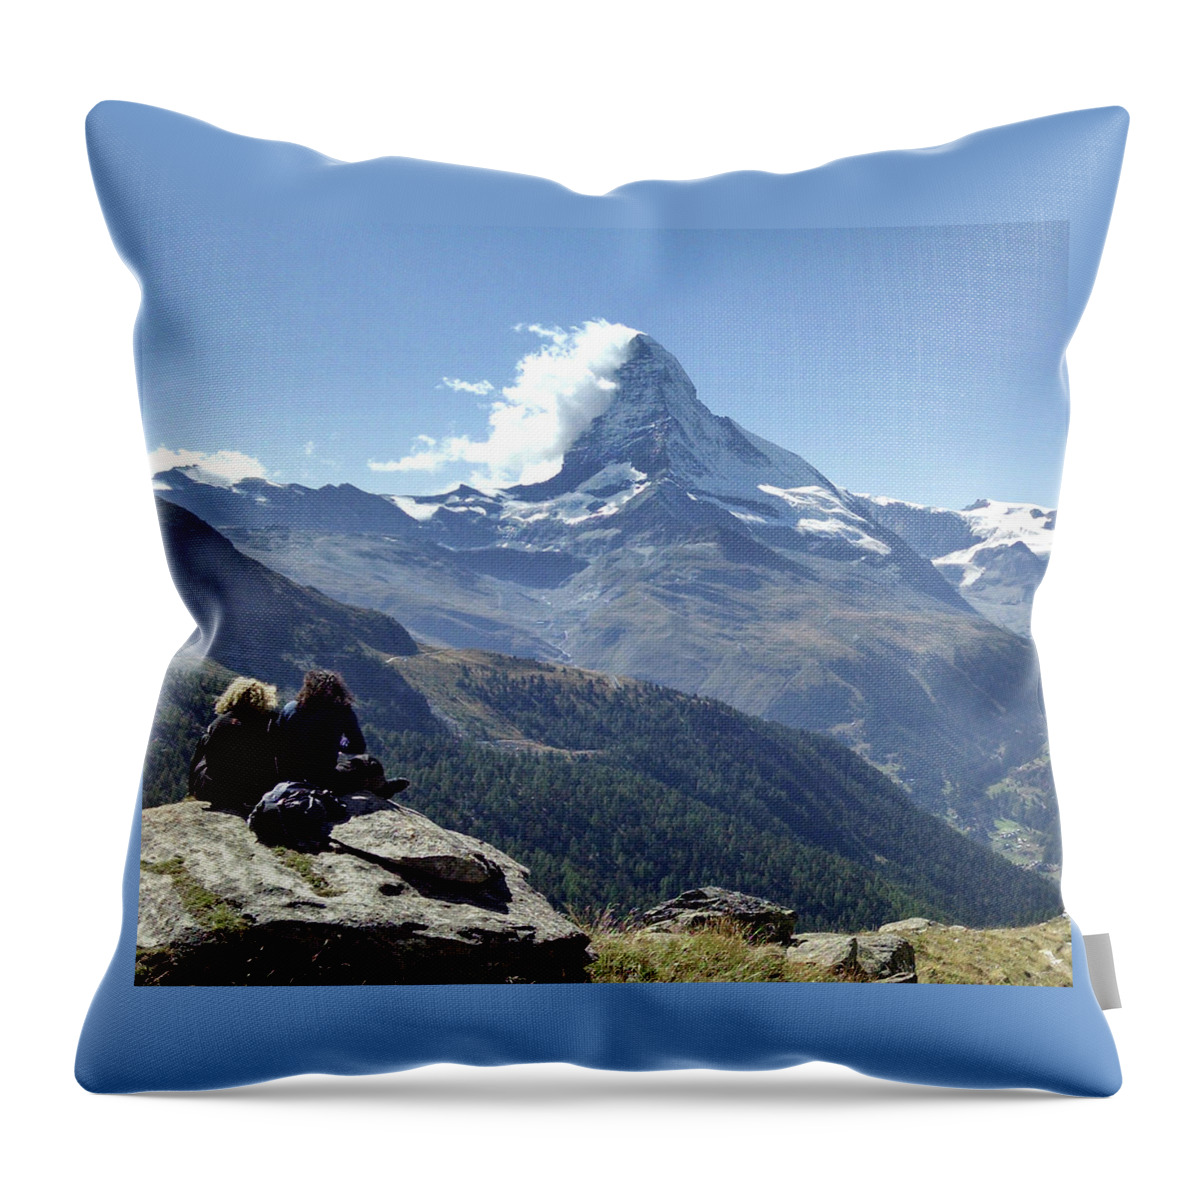 Zermatt Throw Pillow featuring the photograph Matterhorn of Zermatt by George Harth